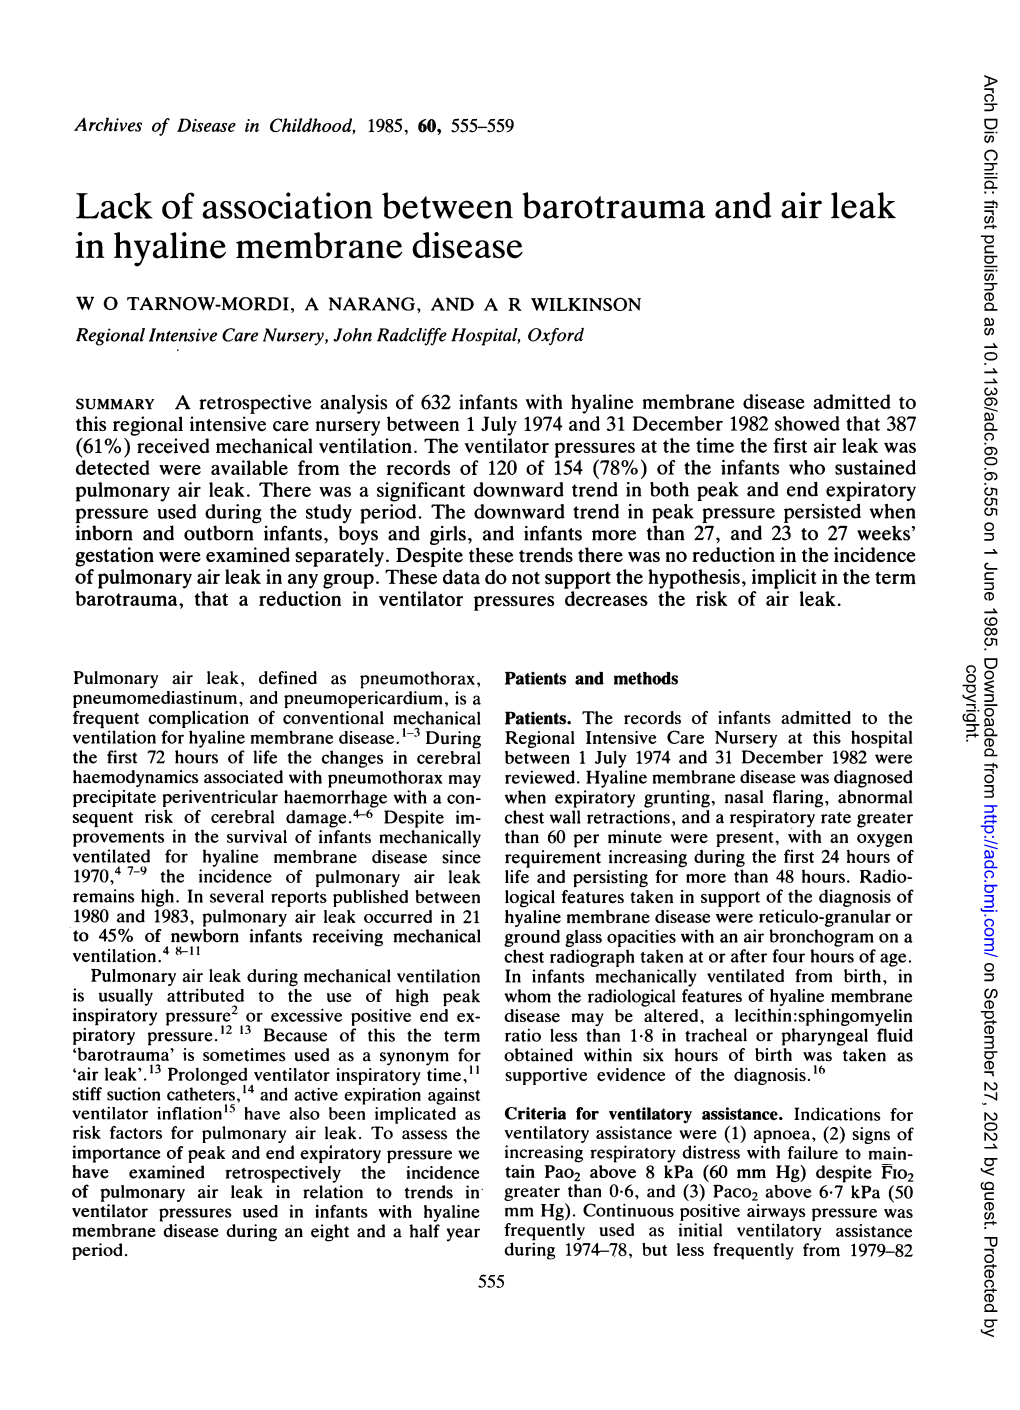 Lack of Association Between Barotrauma and Air Leak in Hyaline Membrane Disease